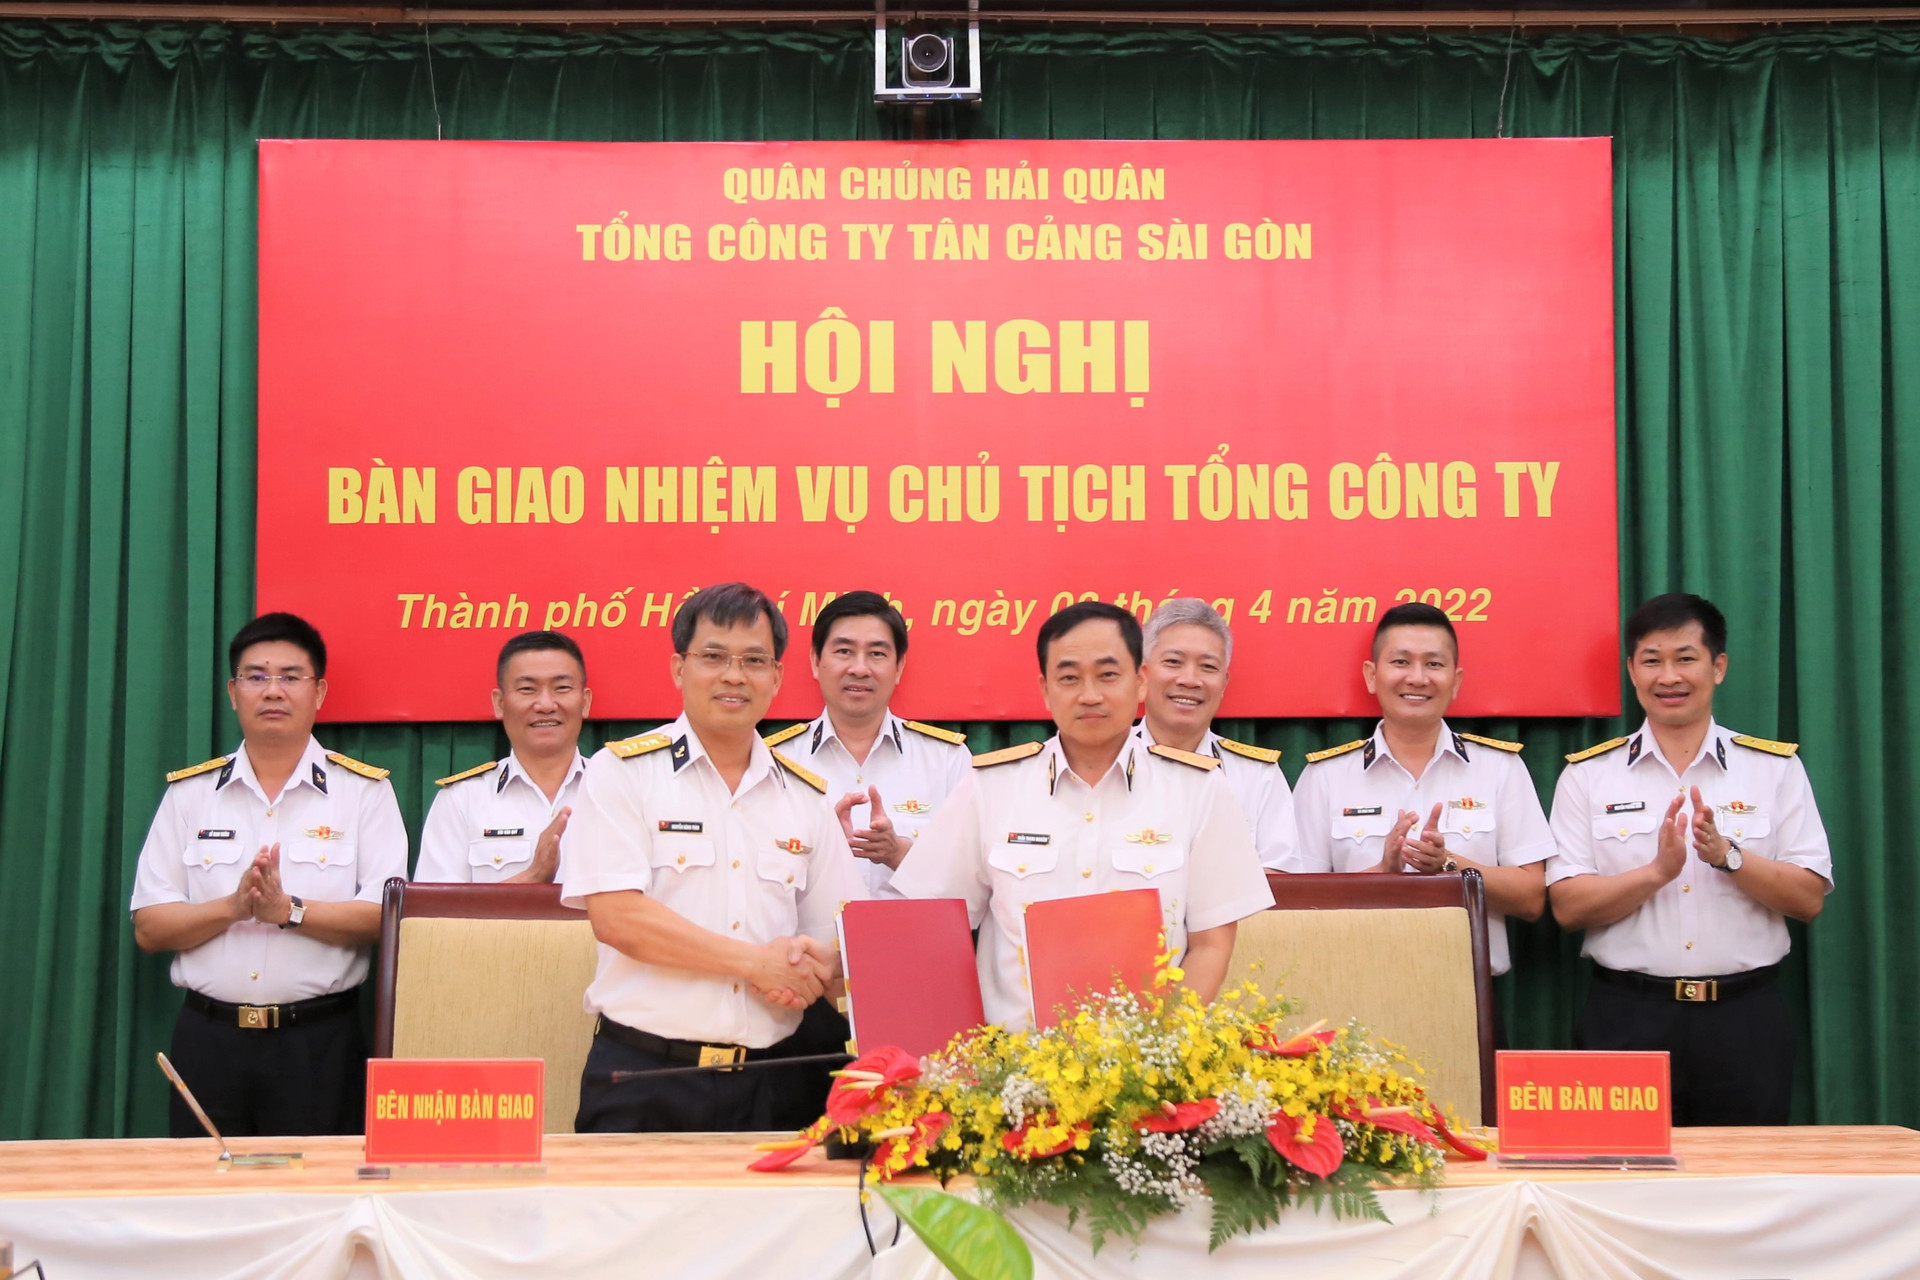 Đại tá Nguyễn Năng Toàn nhận bàn giao nhiệm vụ từ Chuẩn Đô đốc Trần Thanh Nghiêm (Ảnh: Công Hoan) 